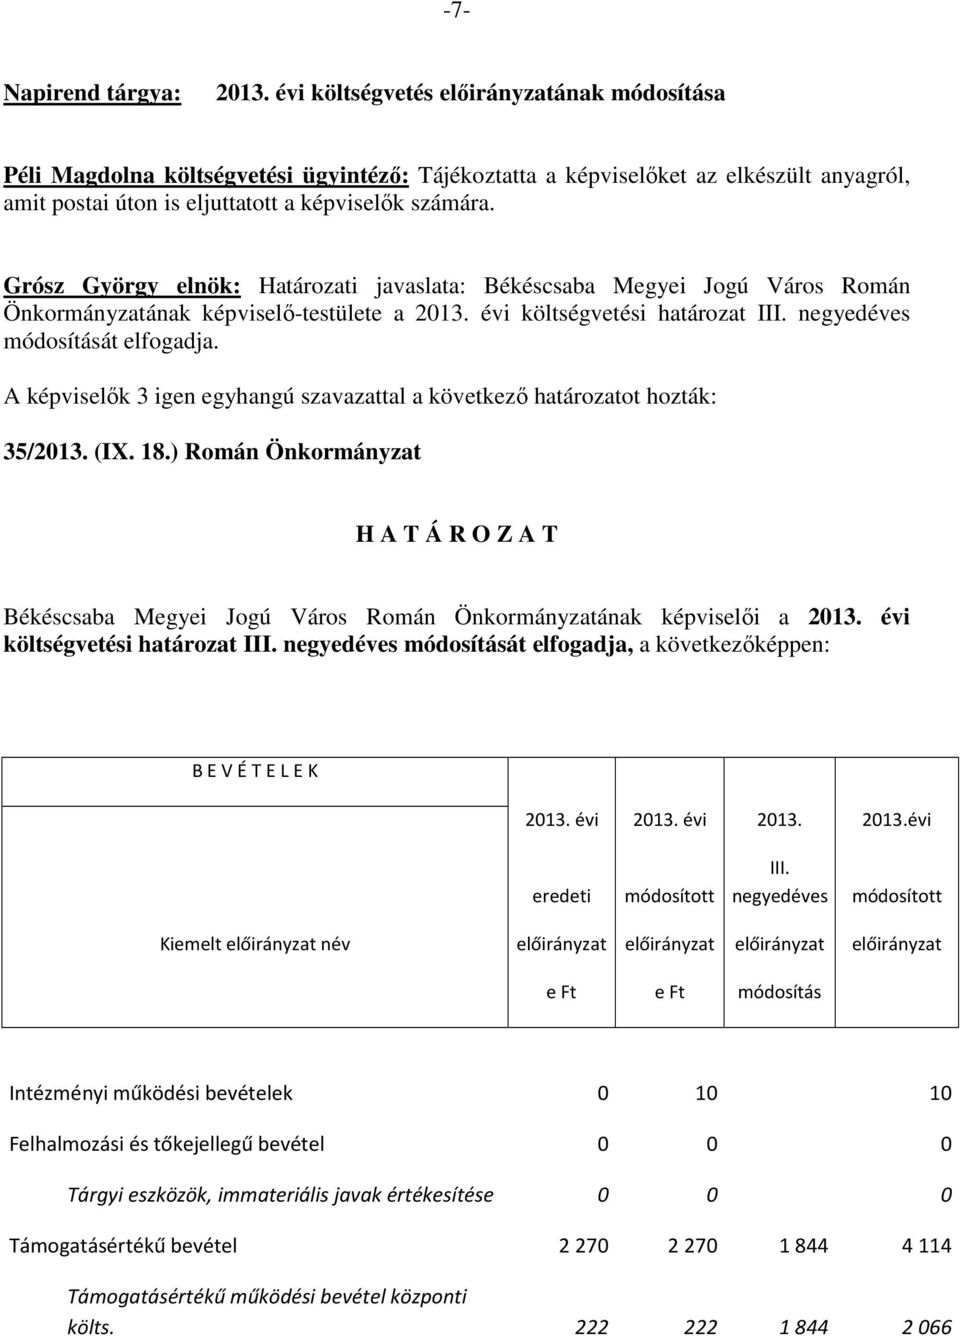 Grósz György elnök: Határozati javaslata: Békéscsaba Megyei Jogú Város Román Önkormányzatának képviselő-testülete a 2013. évi költségvetési határozat III. negyedéves módosítását elfogadja. 35/2013.